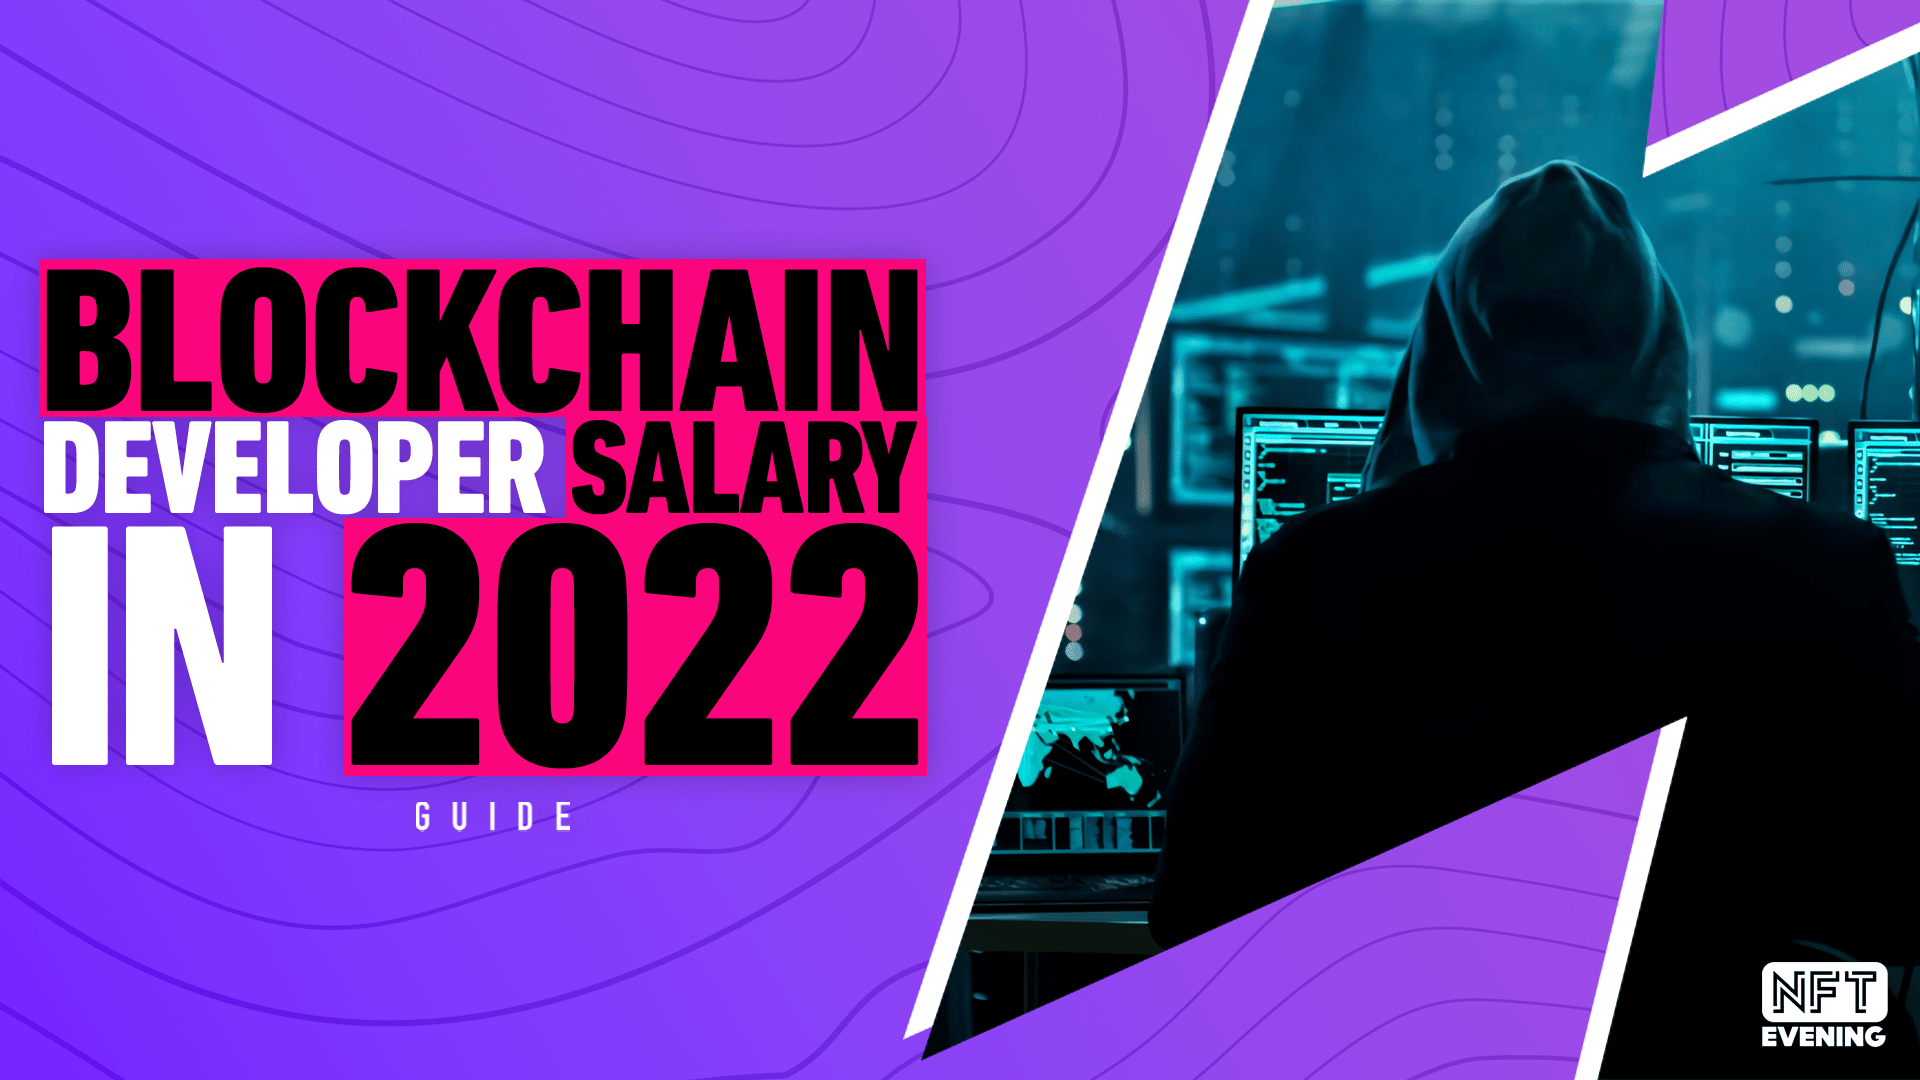 blockchain developer salary in 2022 banner nftevening guide